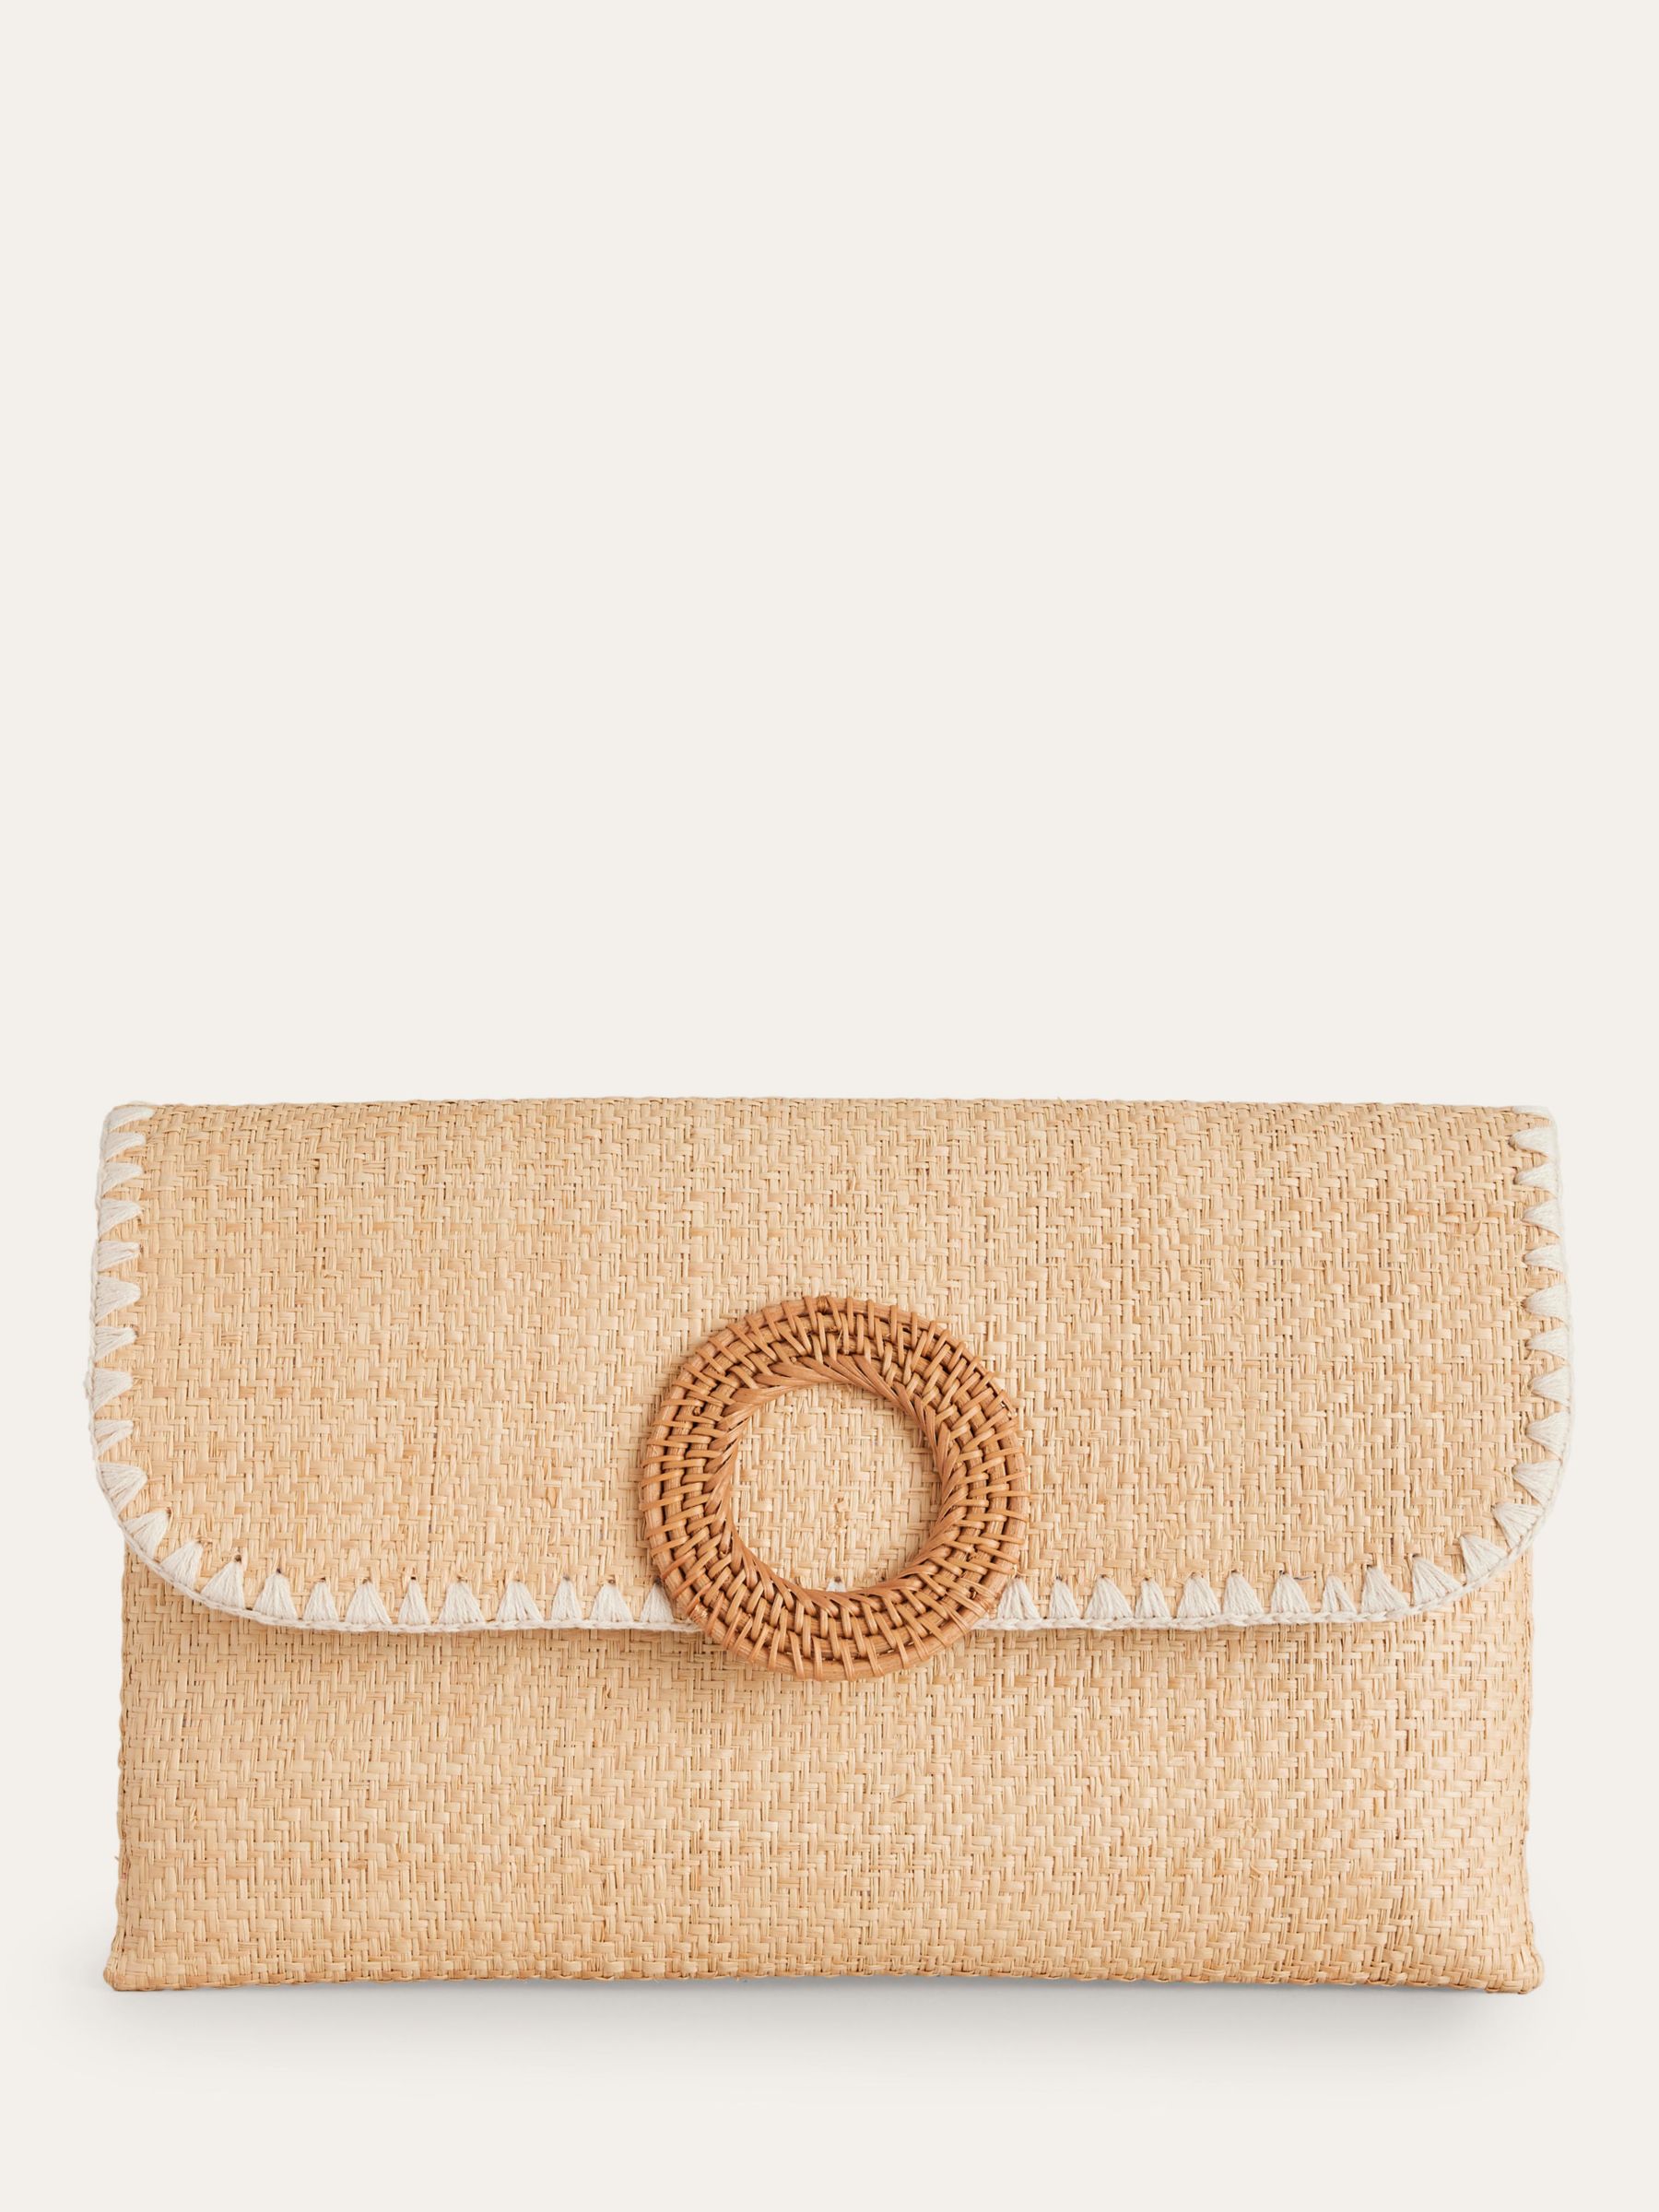 Boden Raffia Clutch Bag, Natural, One Size